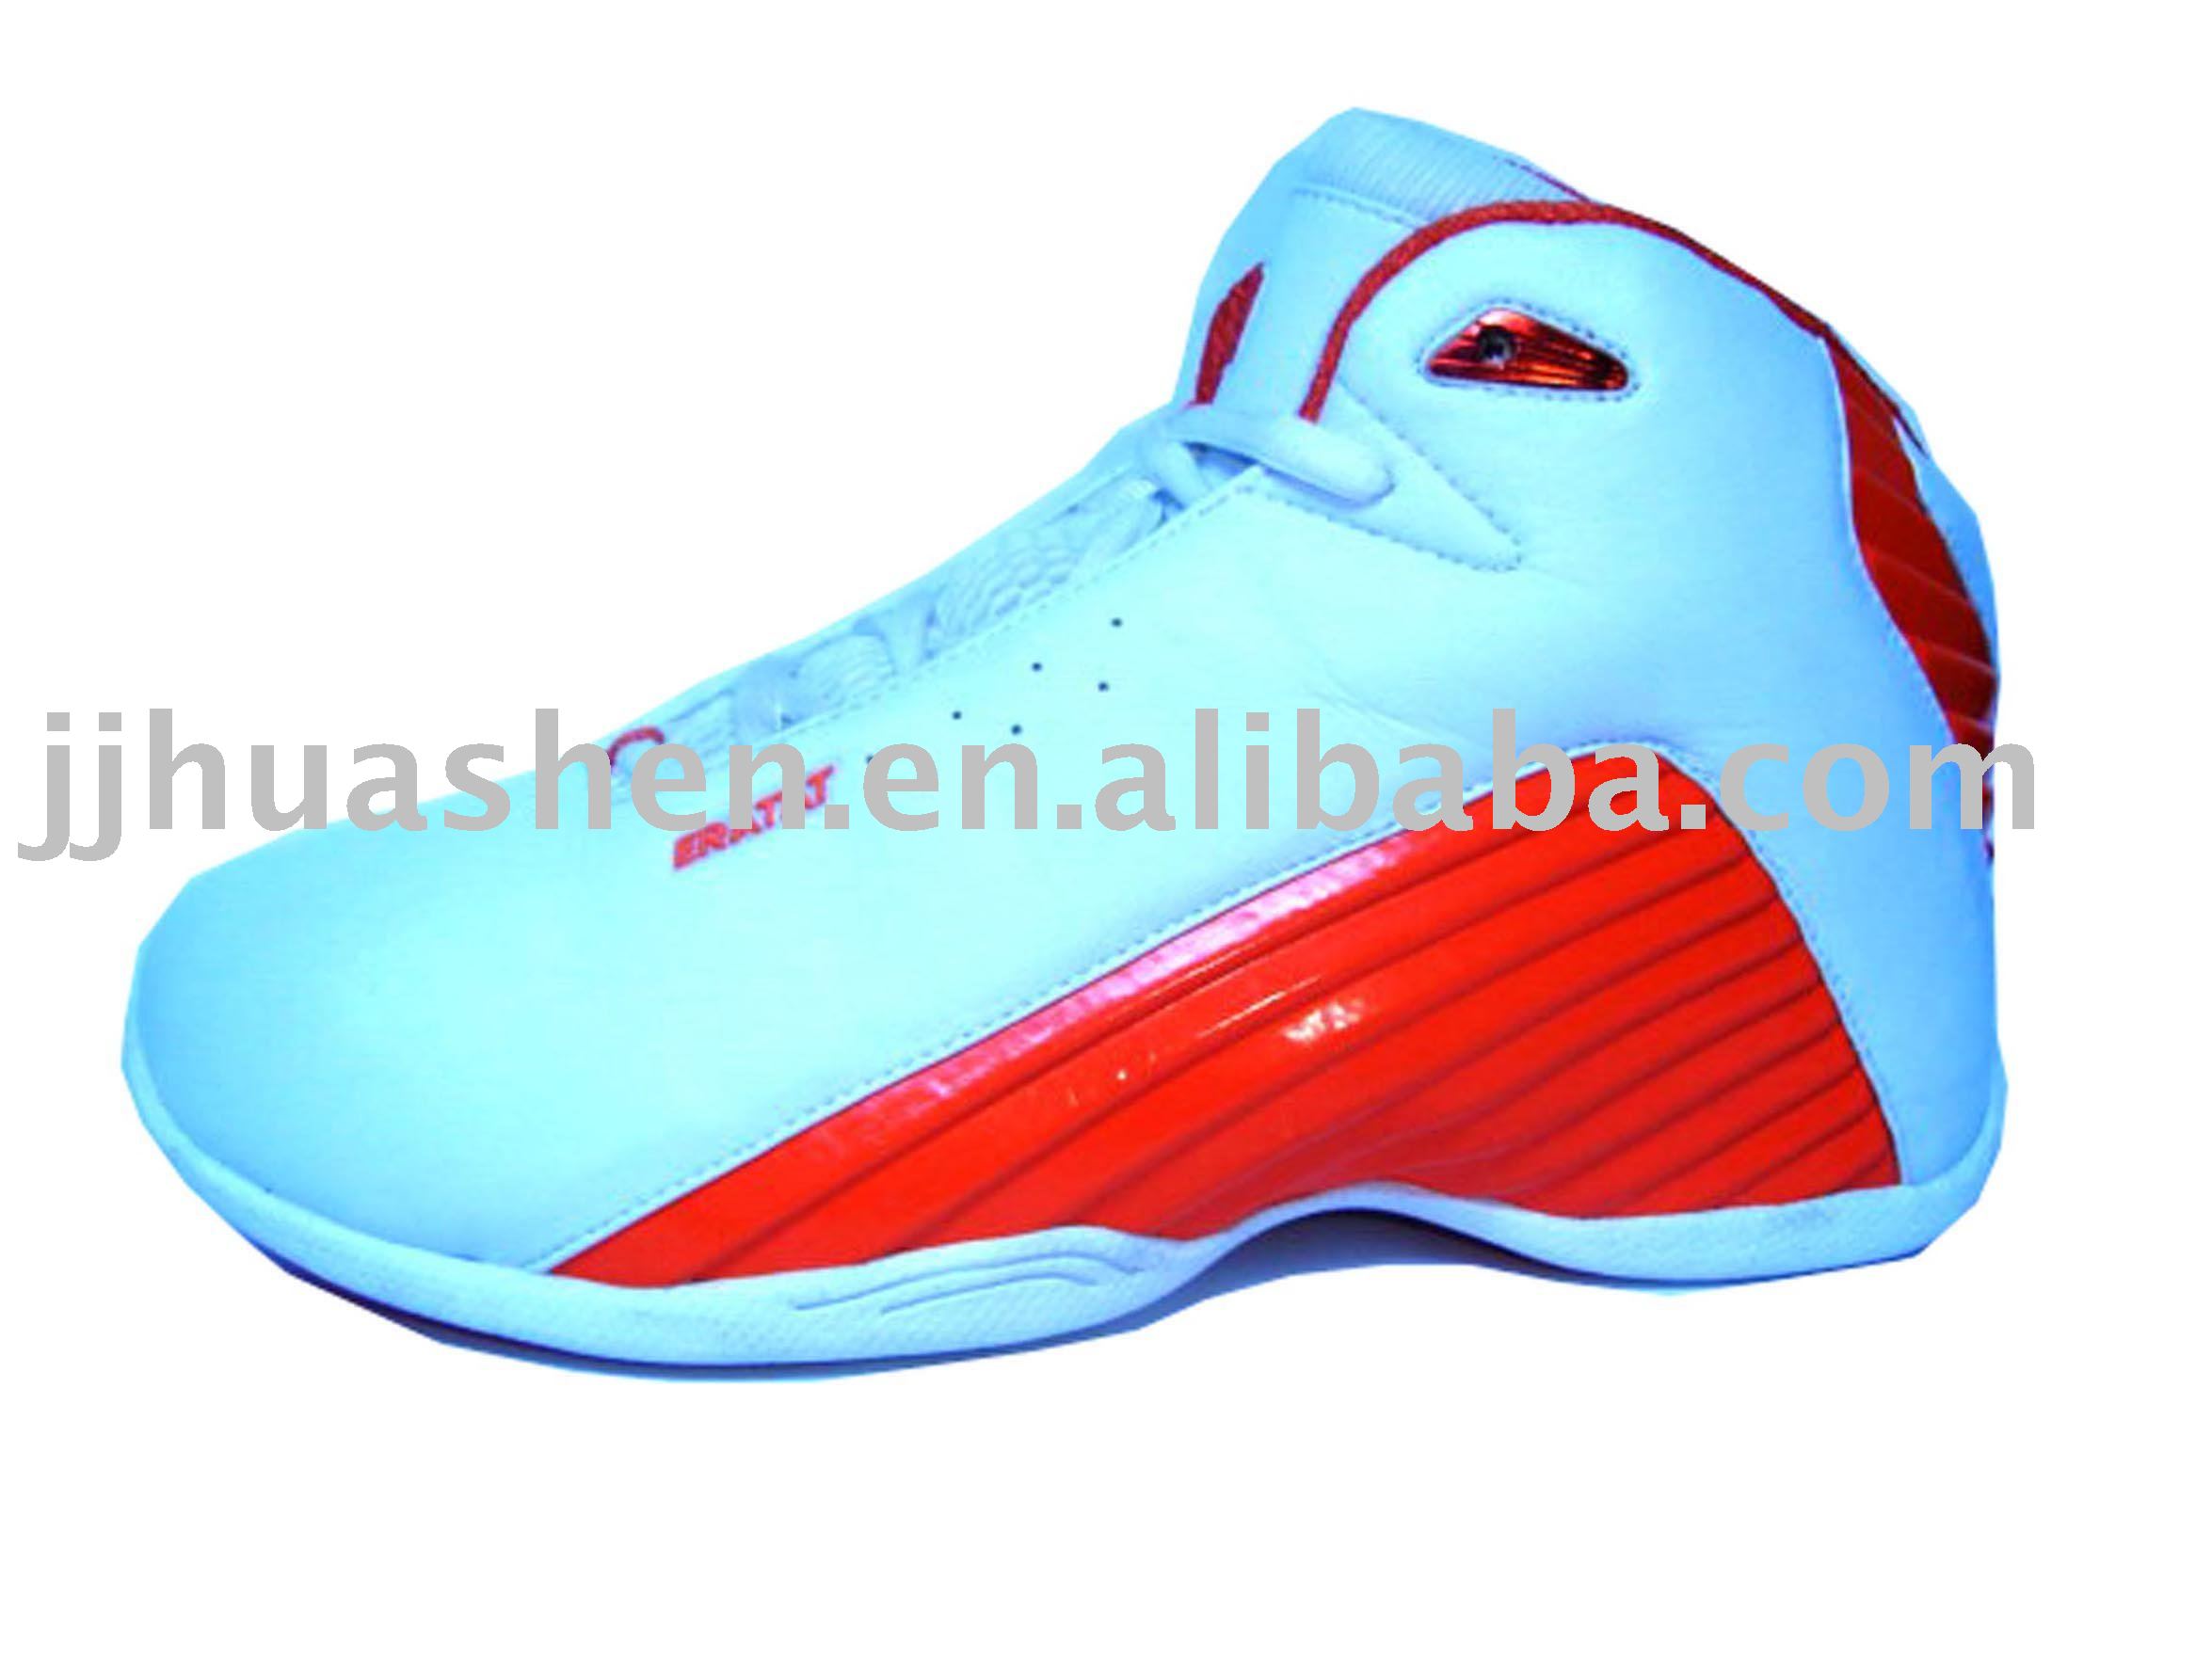 basketballs shoes